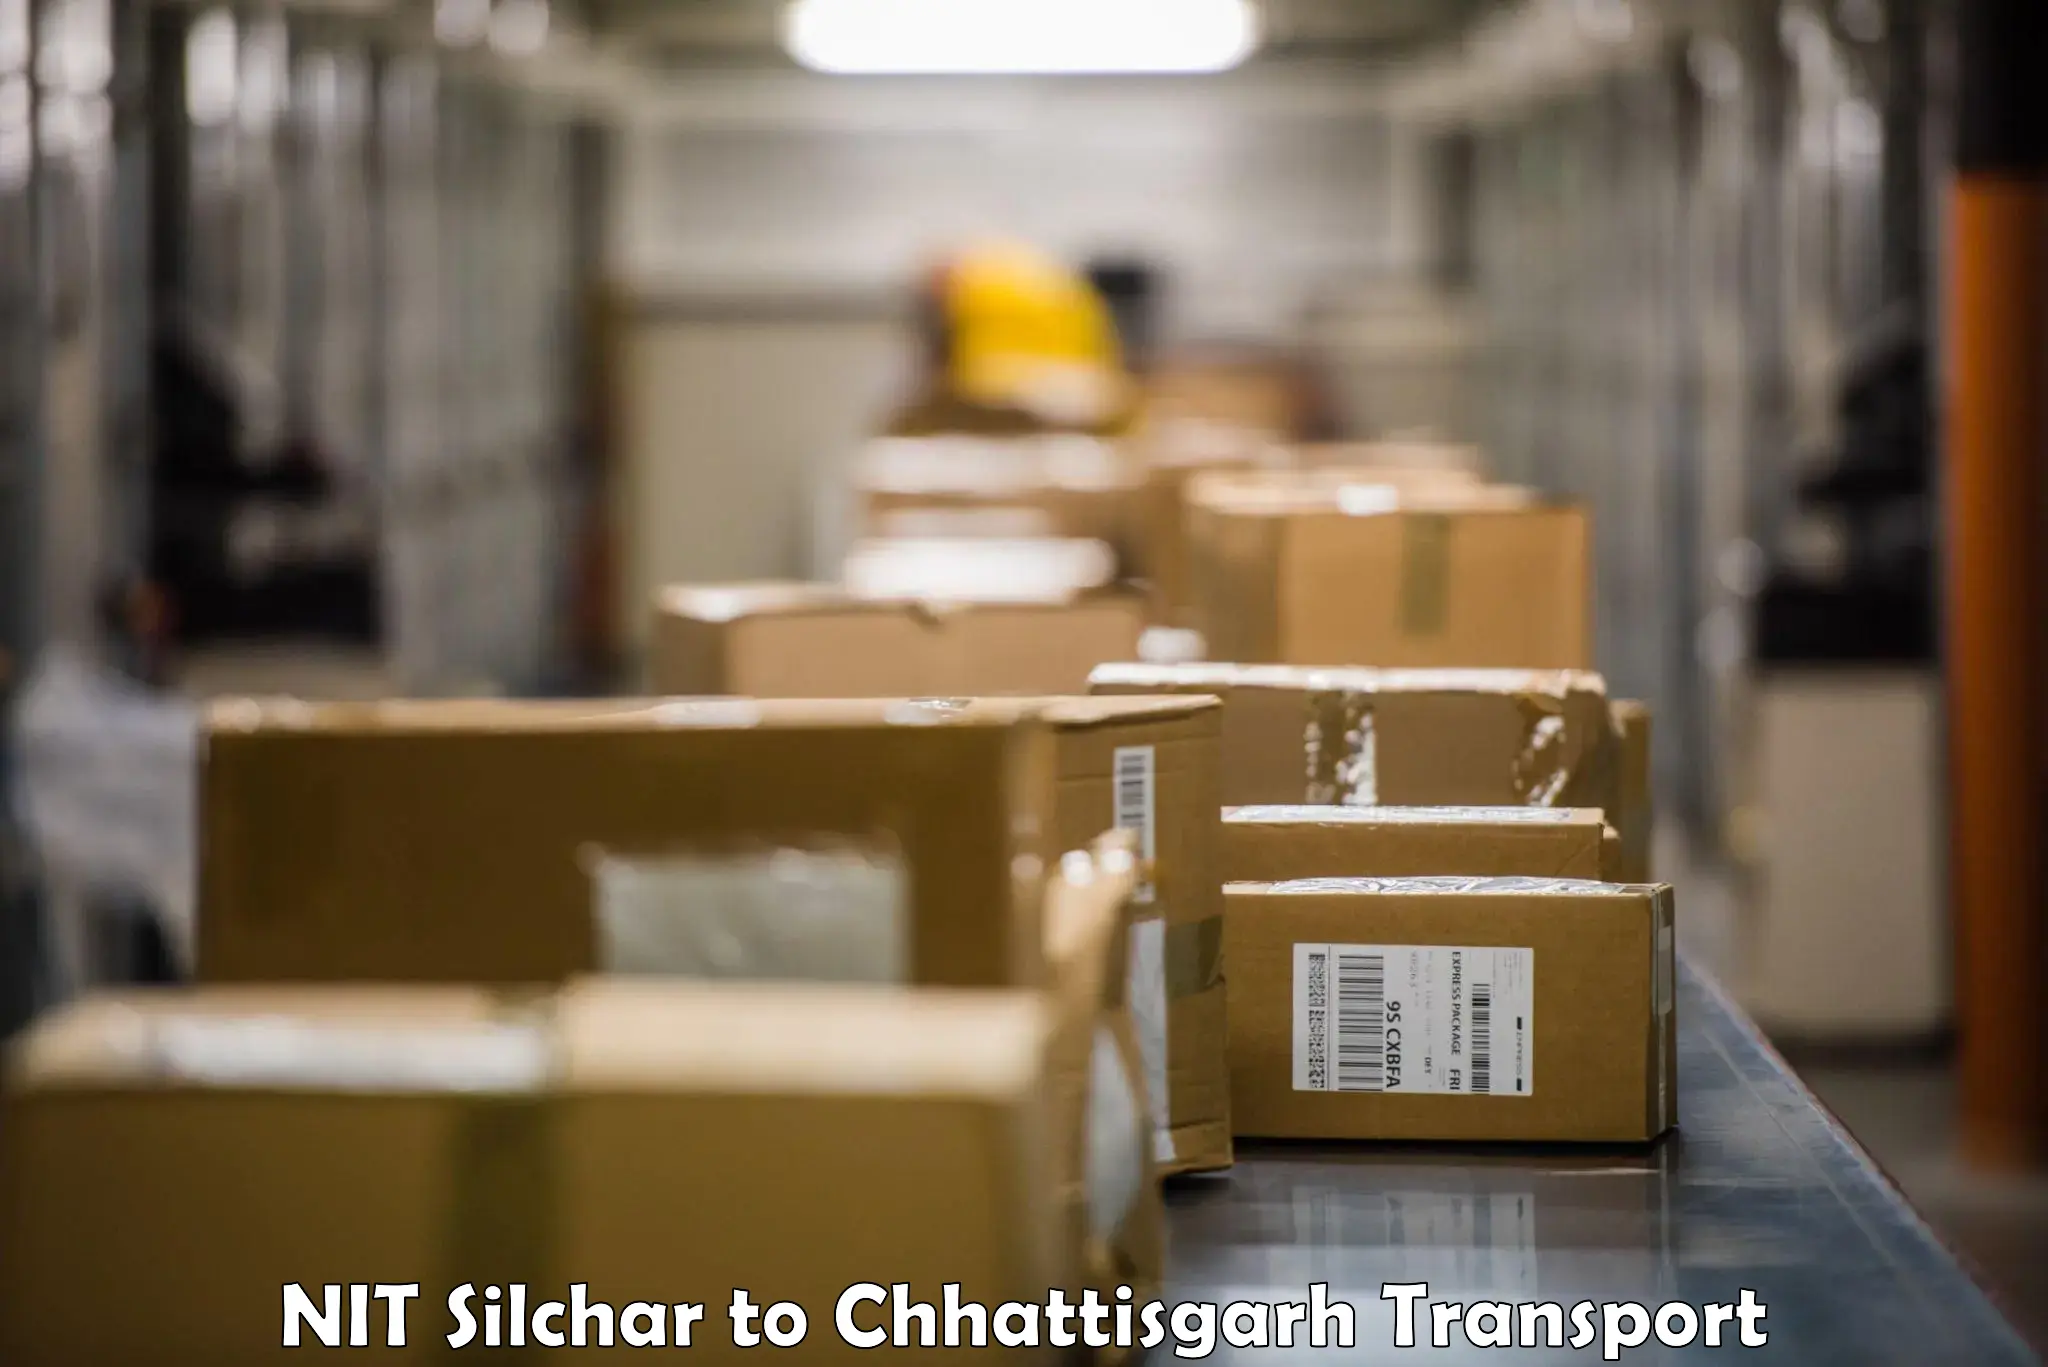 Vehicle parcel service NIT Silchar to Ramanujganj